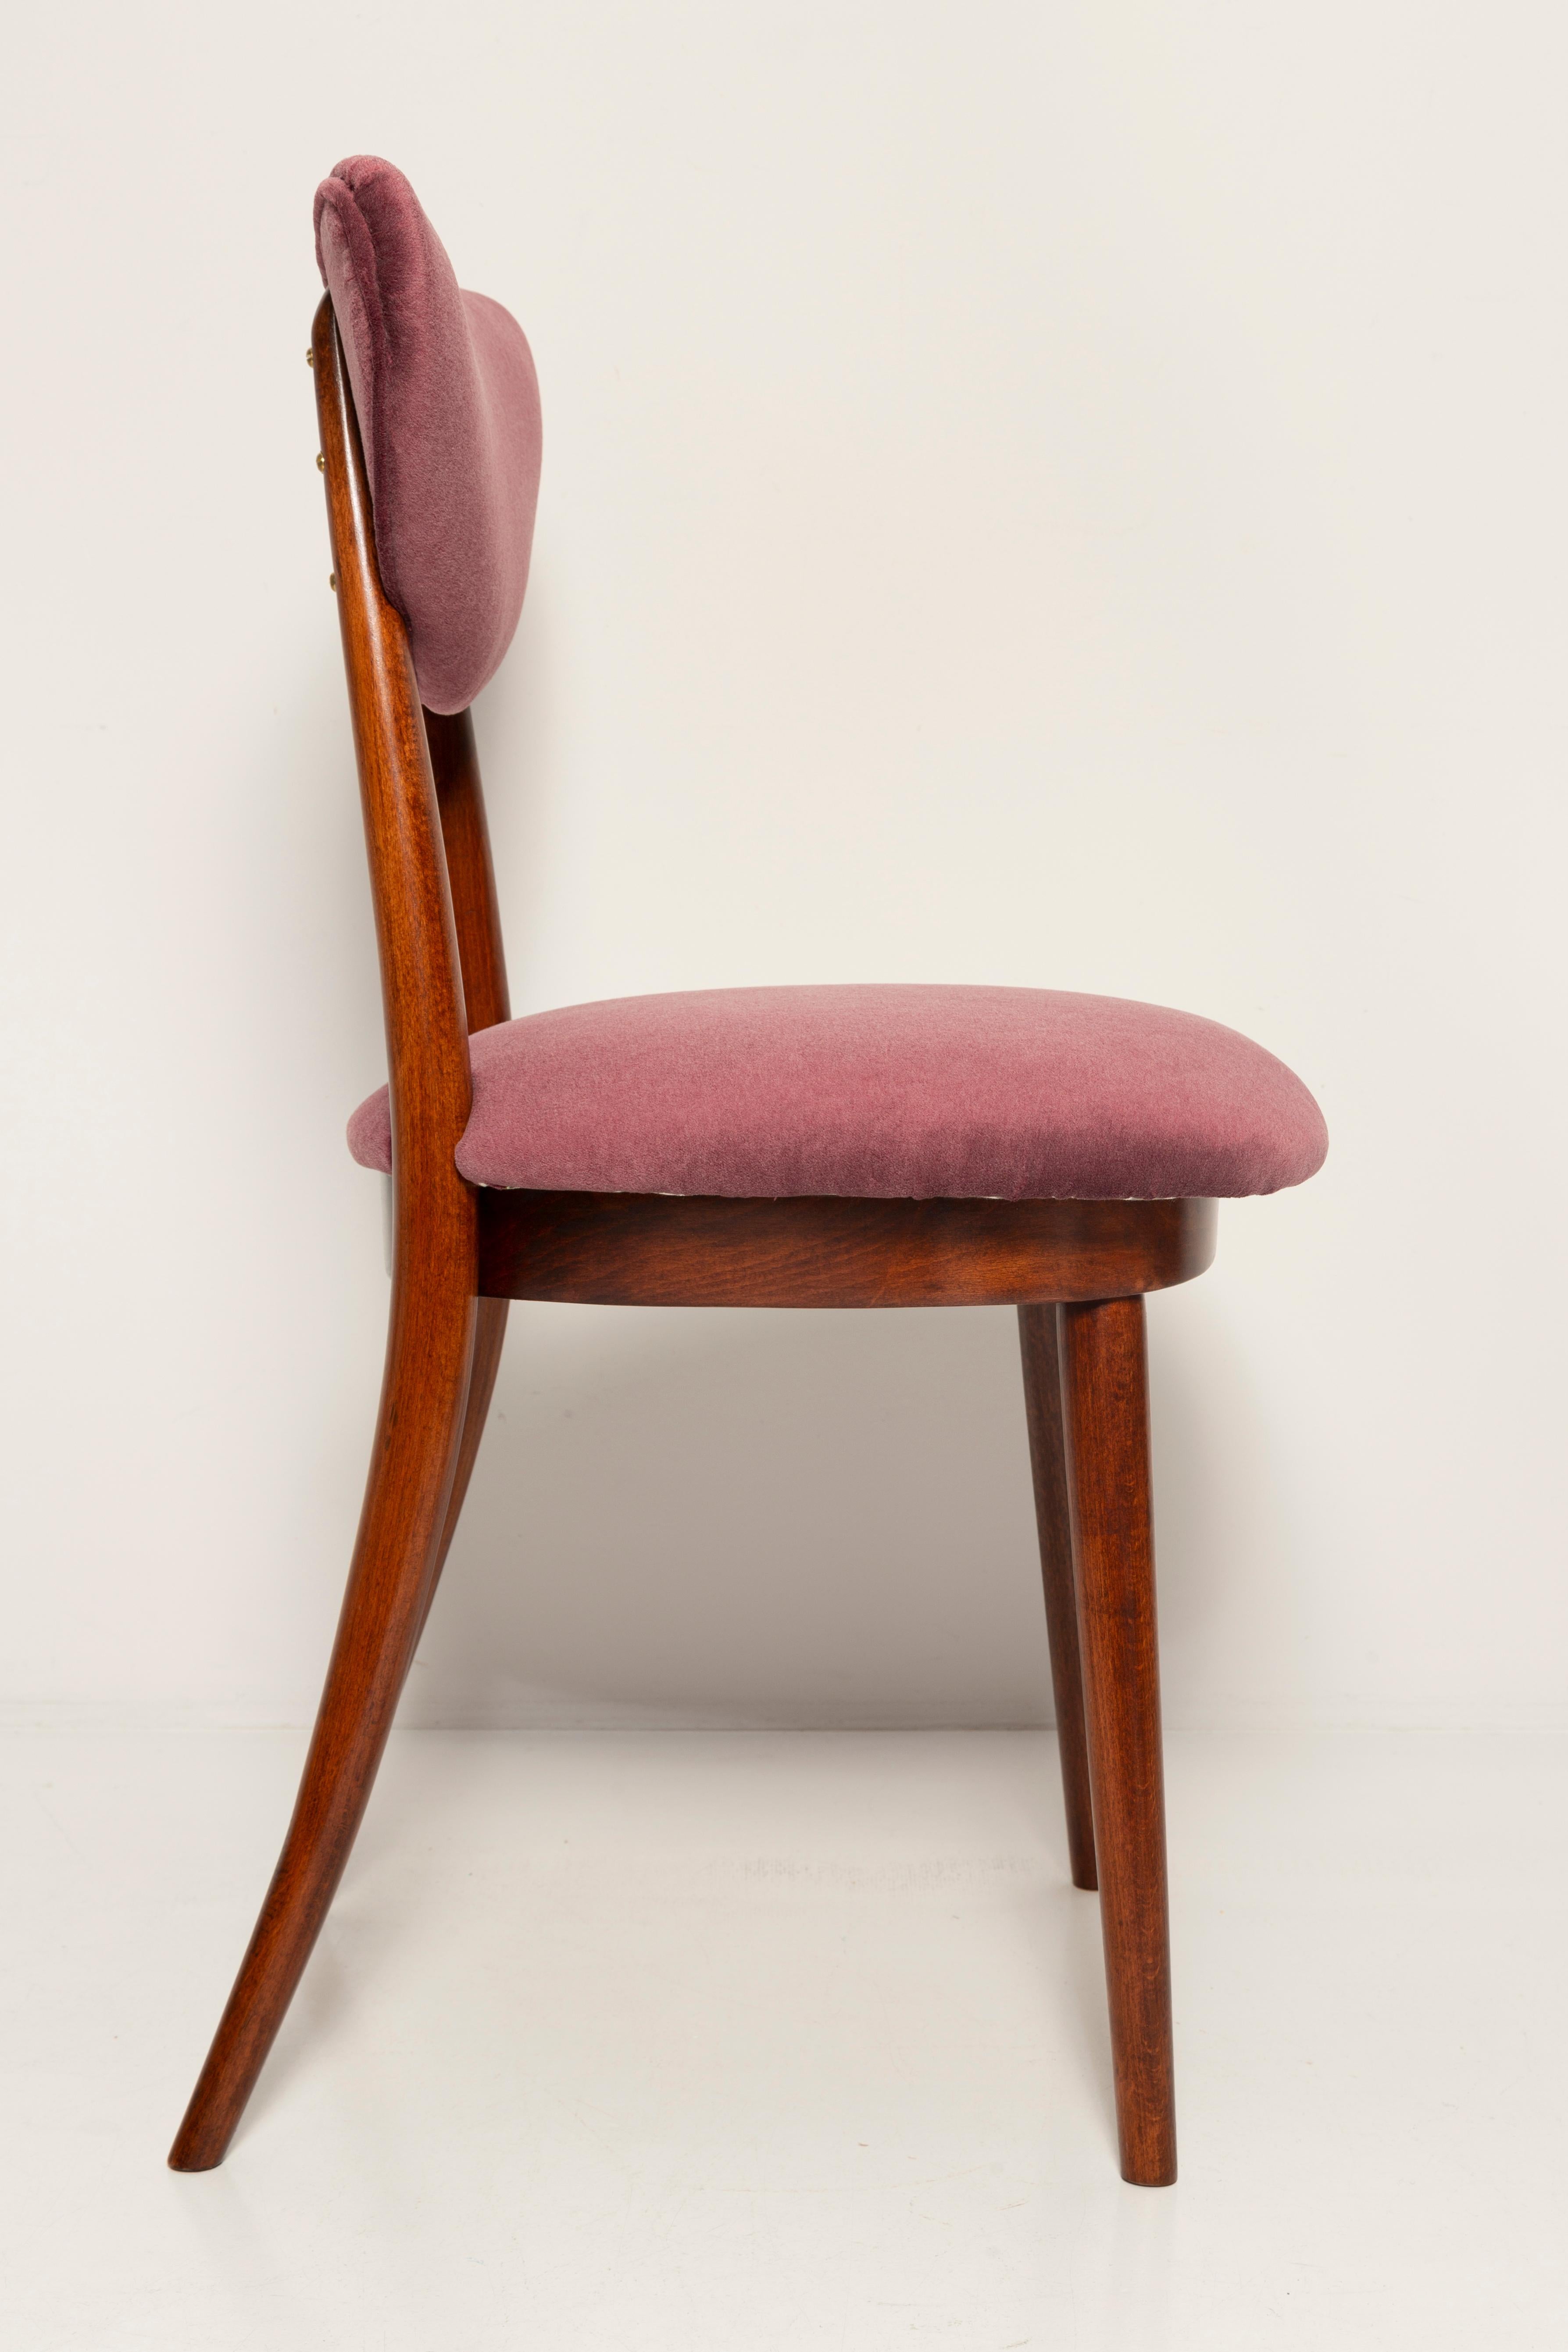 Midcentury Plum Violet Velvet Heart Chair, Europe, 1960s For Sale 2